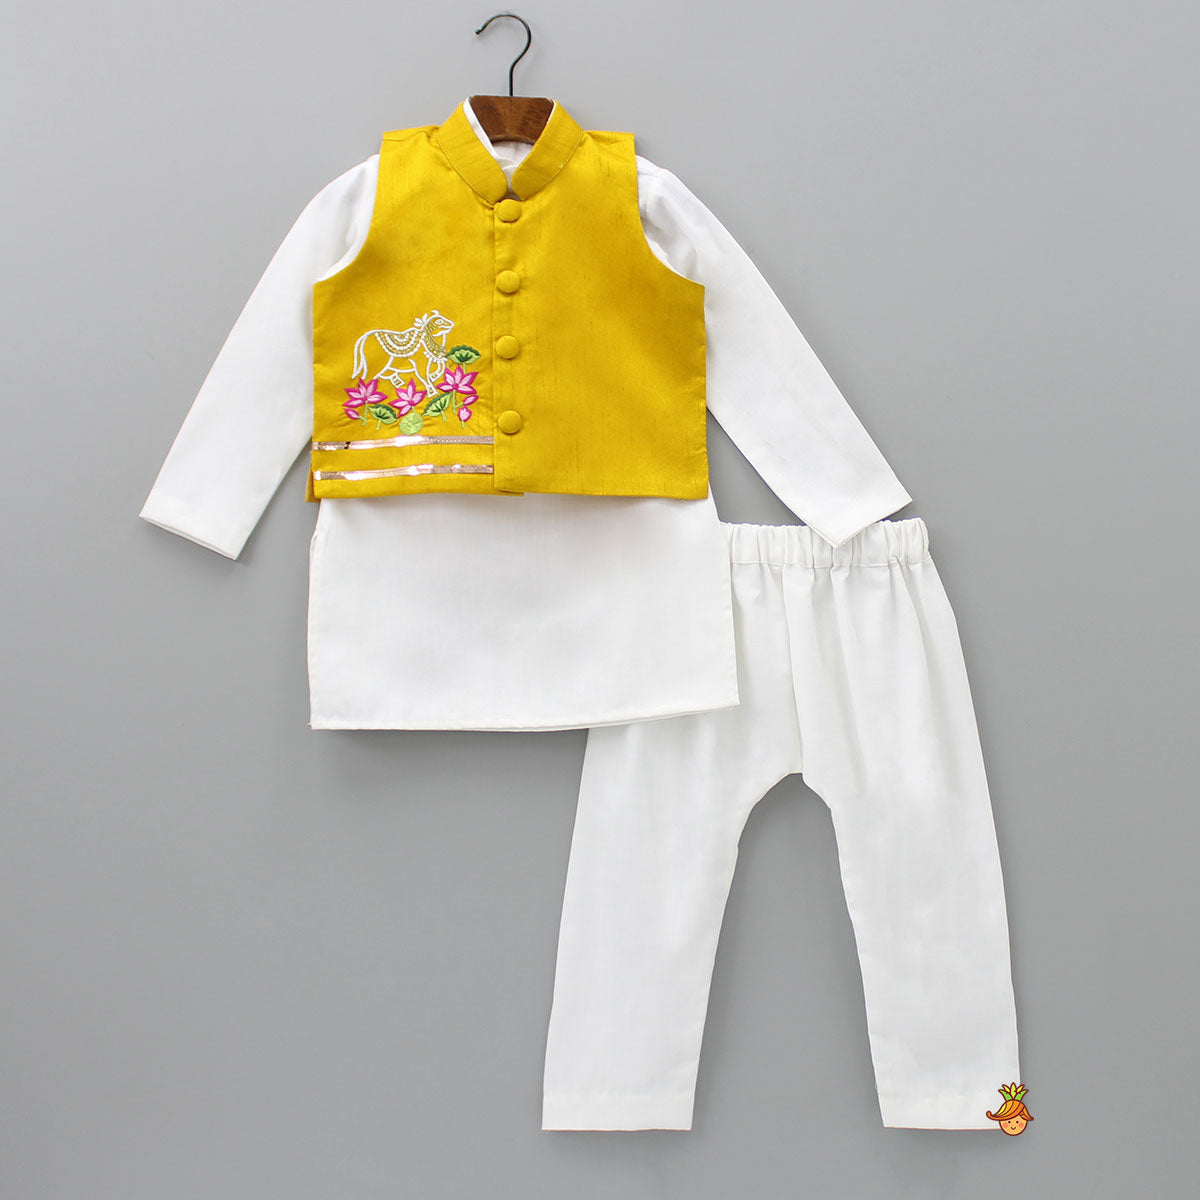 Mandarin Collar Off White Kurta With Holographic Lace Enhanced Jacket And Pyjama